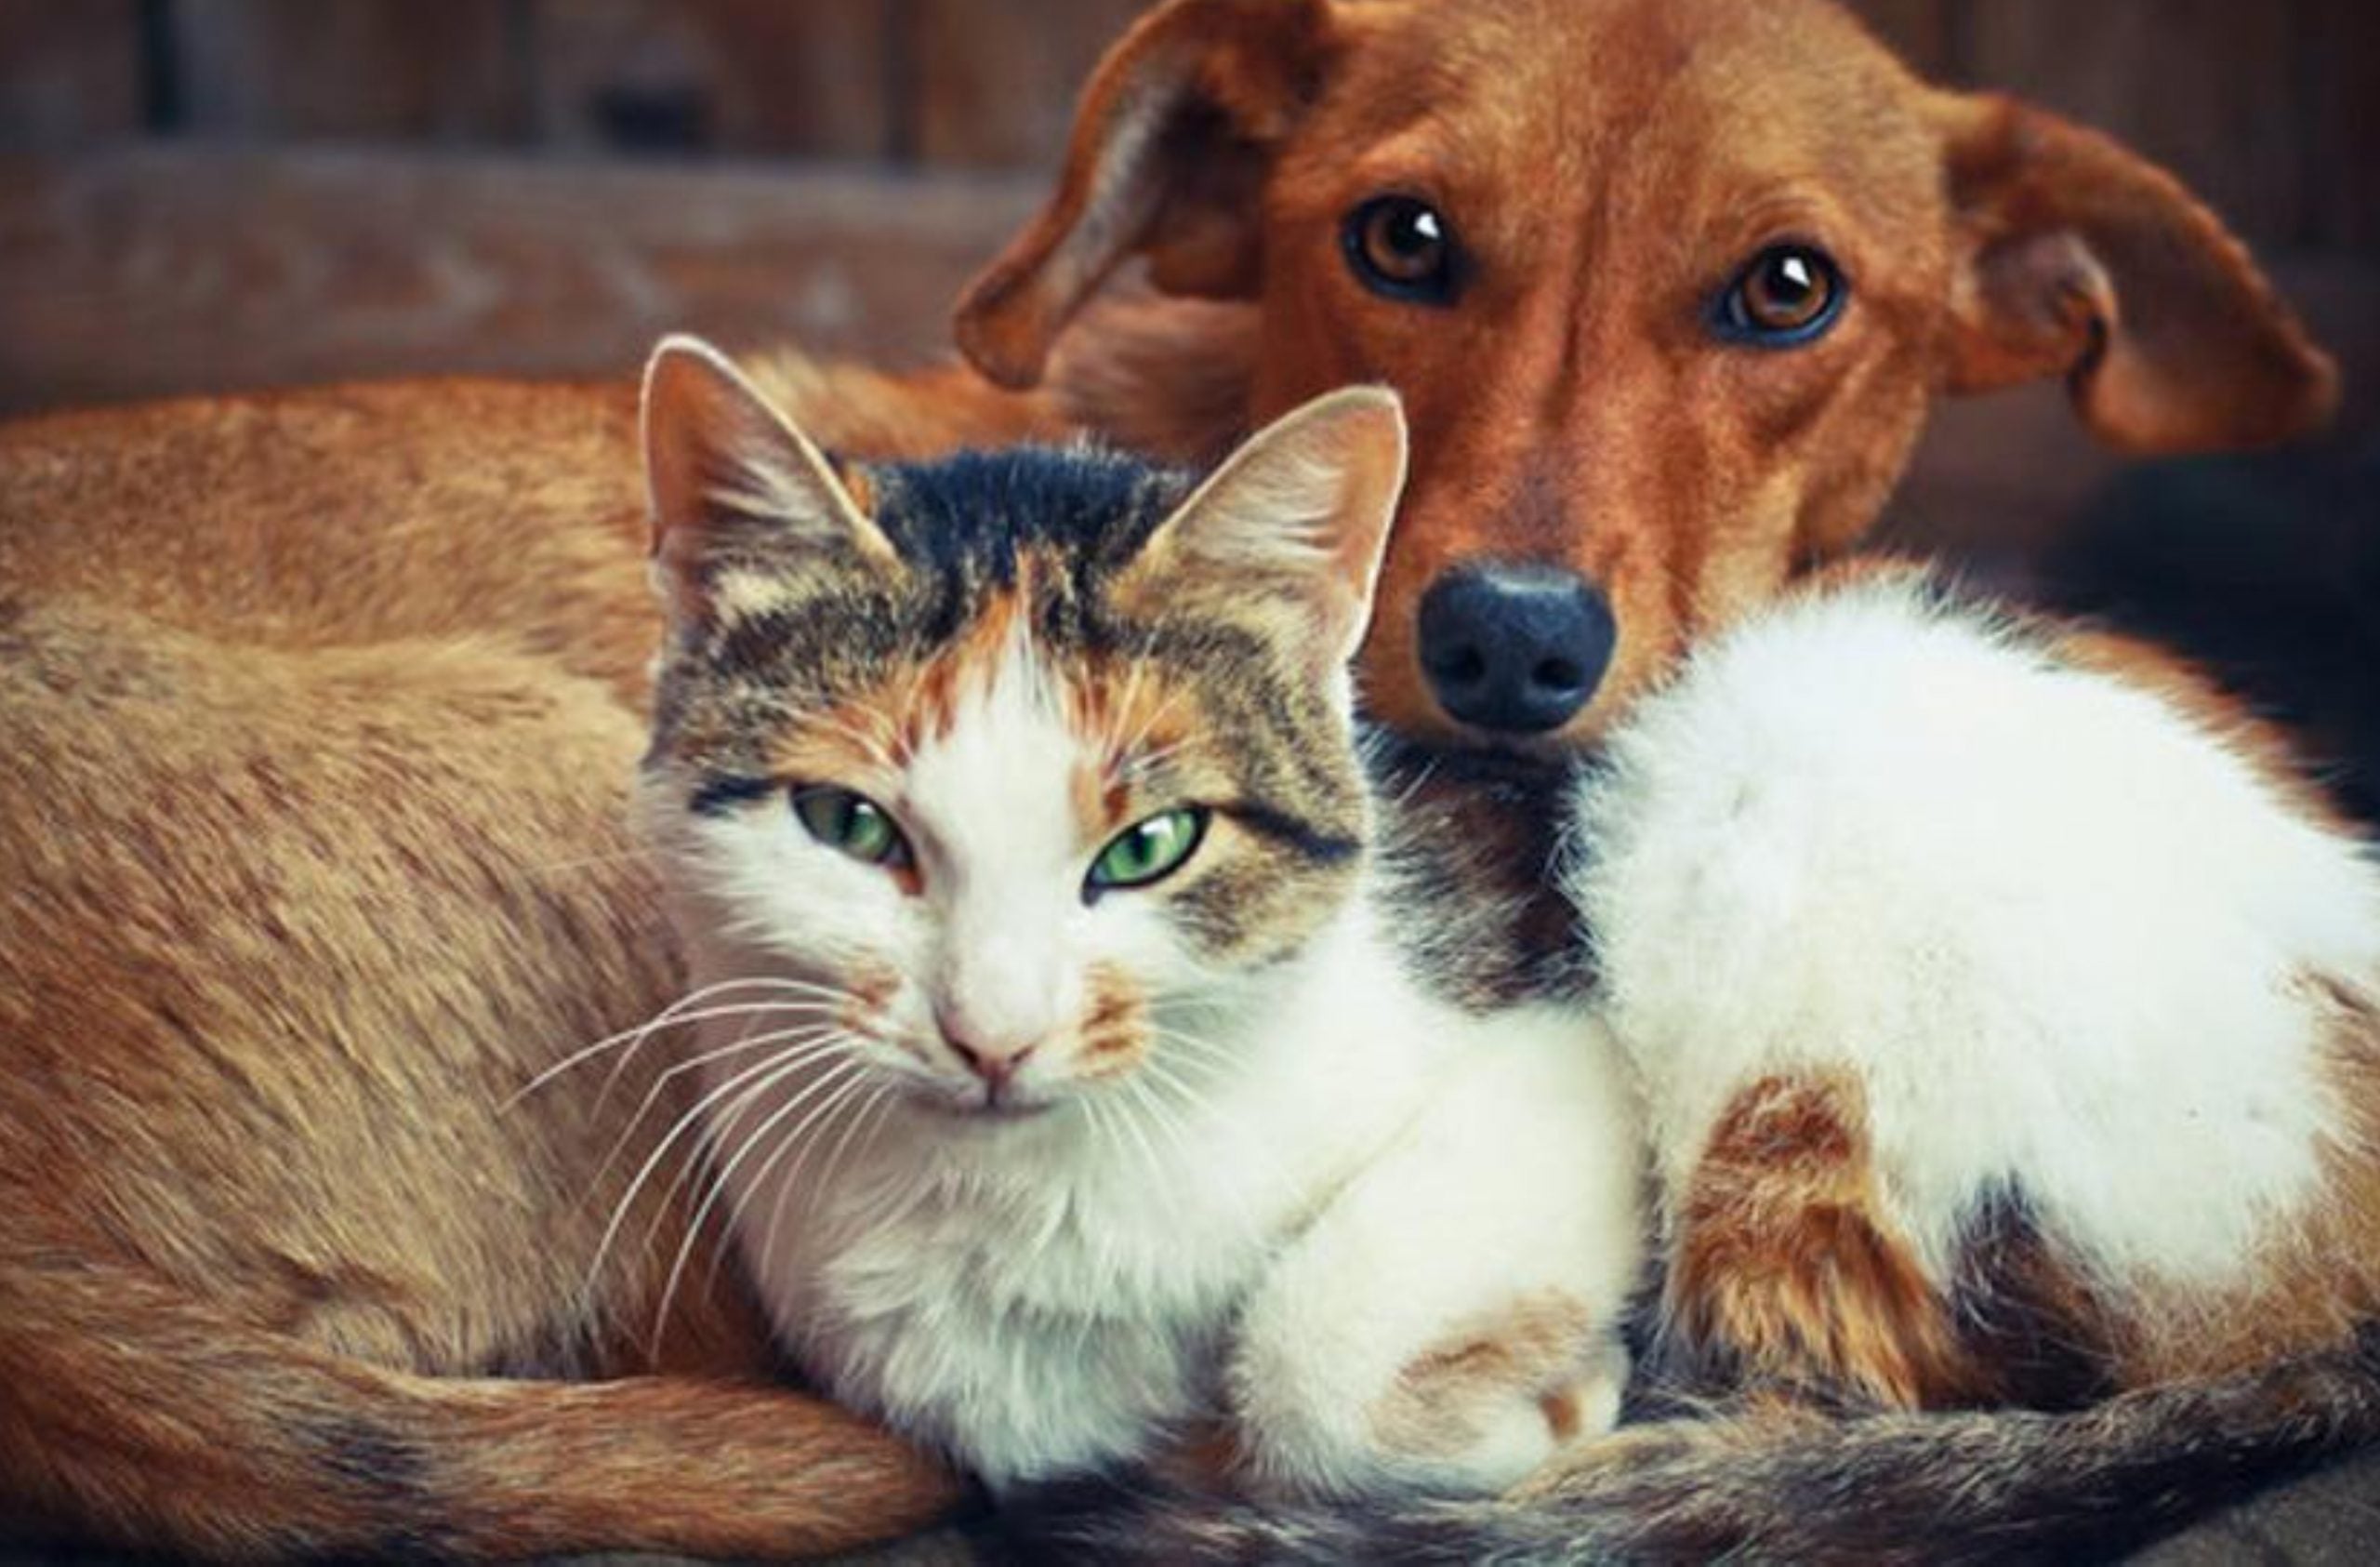 Ютуб домашнее животное. Домашние животные. Кошки и собаки. Бездомные животные. Собака и кошка вместе.